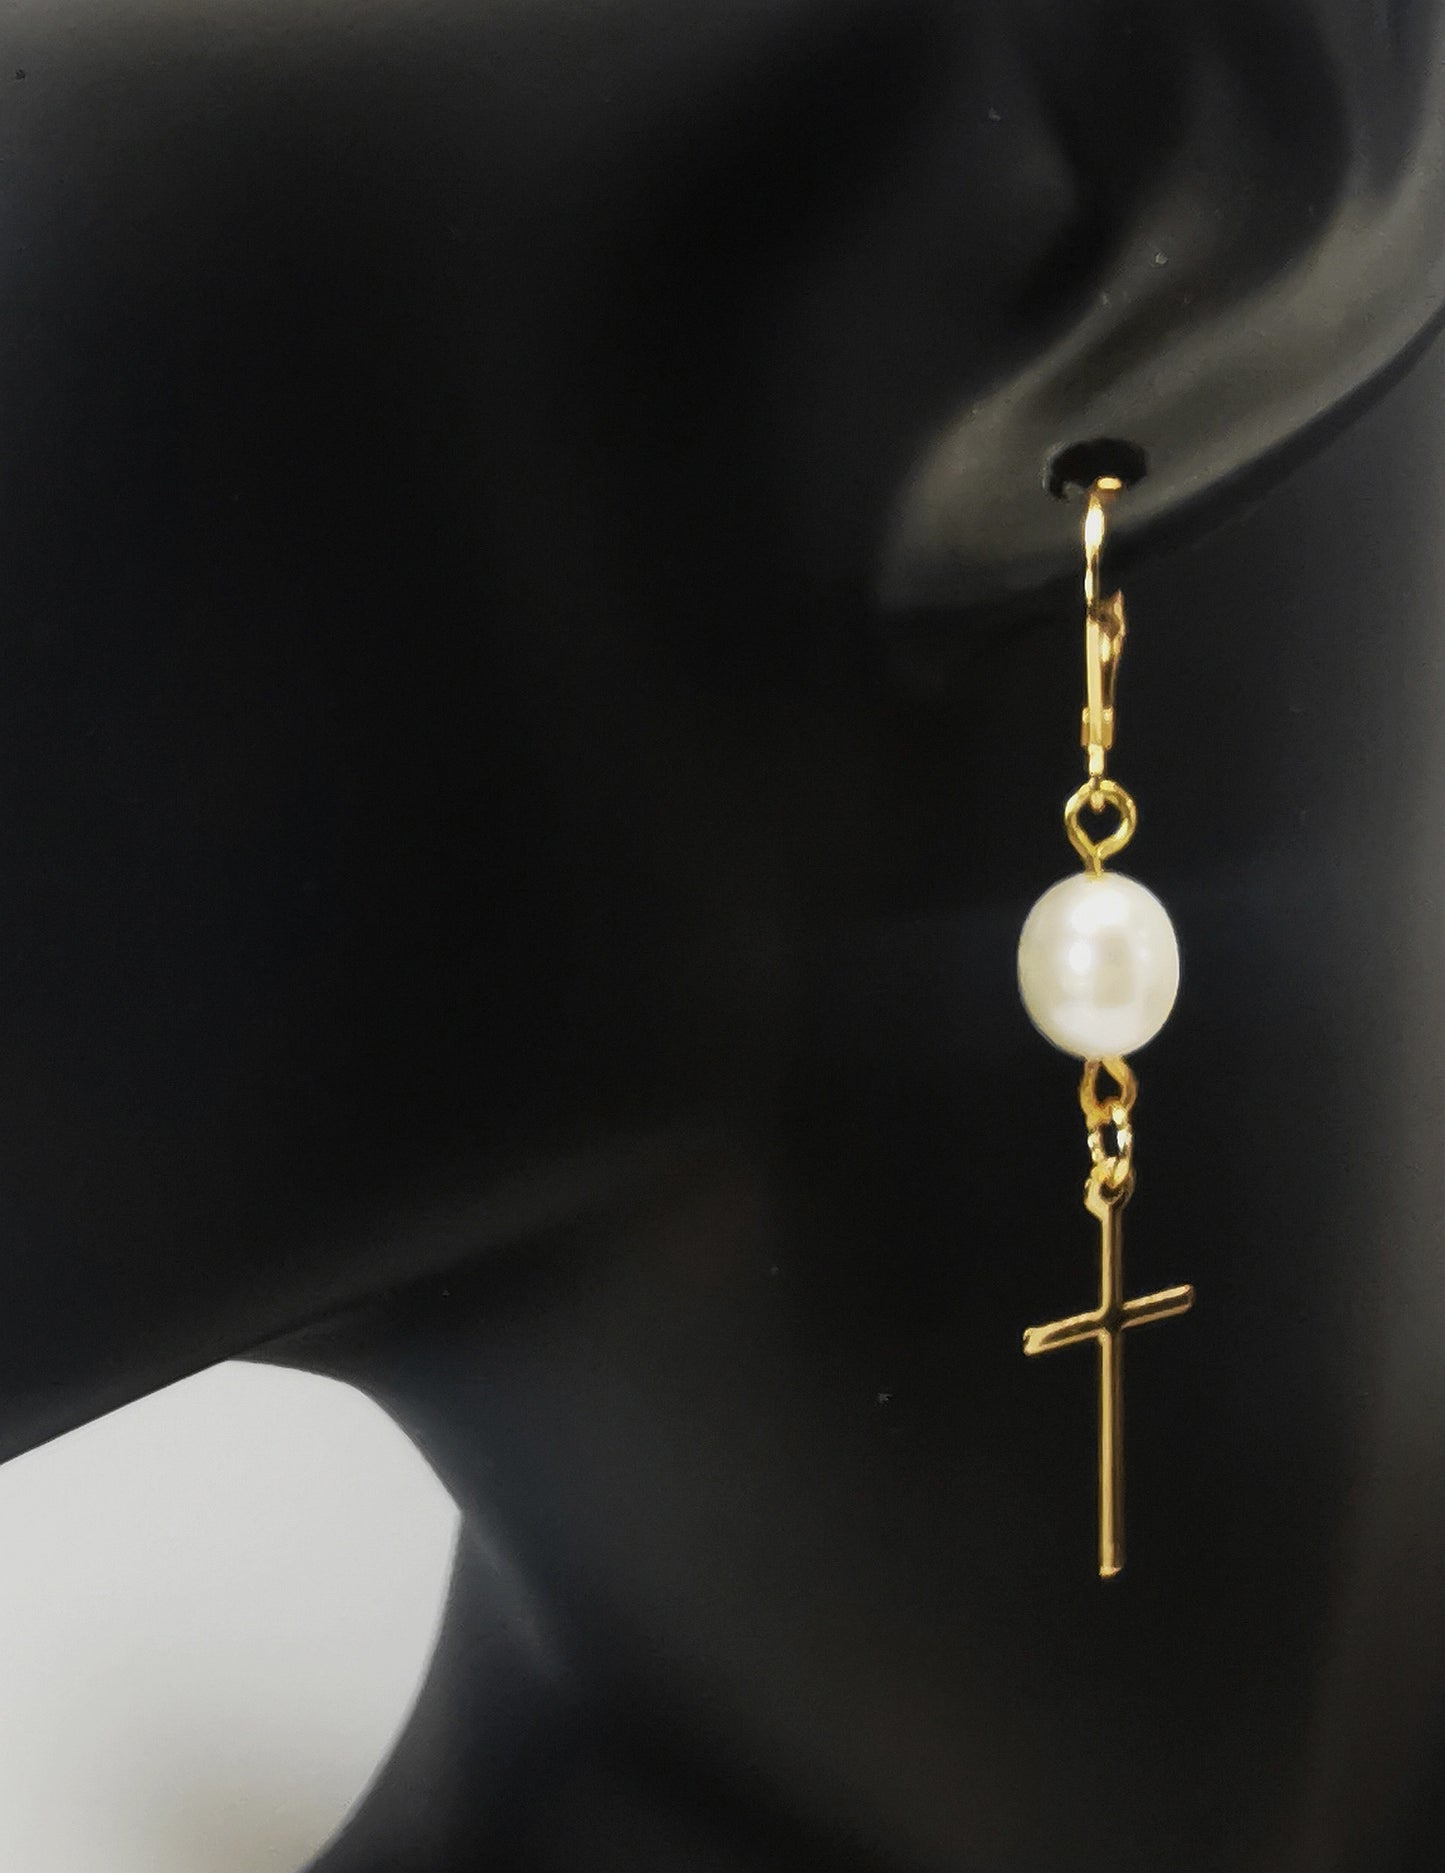 Une boucle d'oreilles perle de culture ovale 7-9mm blanche , accrochée sous dormeuse plaquée or. Sous la perle est suspendue une croix plaquée or de 22x10mm. Présentée accrochée à l'oreille d'un mannequin buste. Vue de trois quart face.